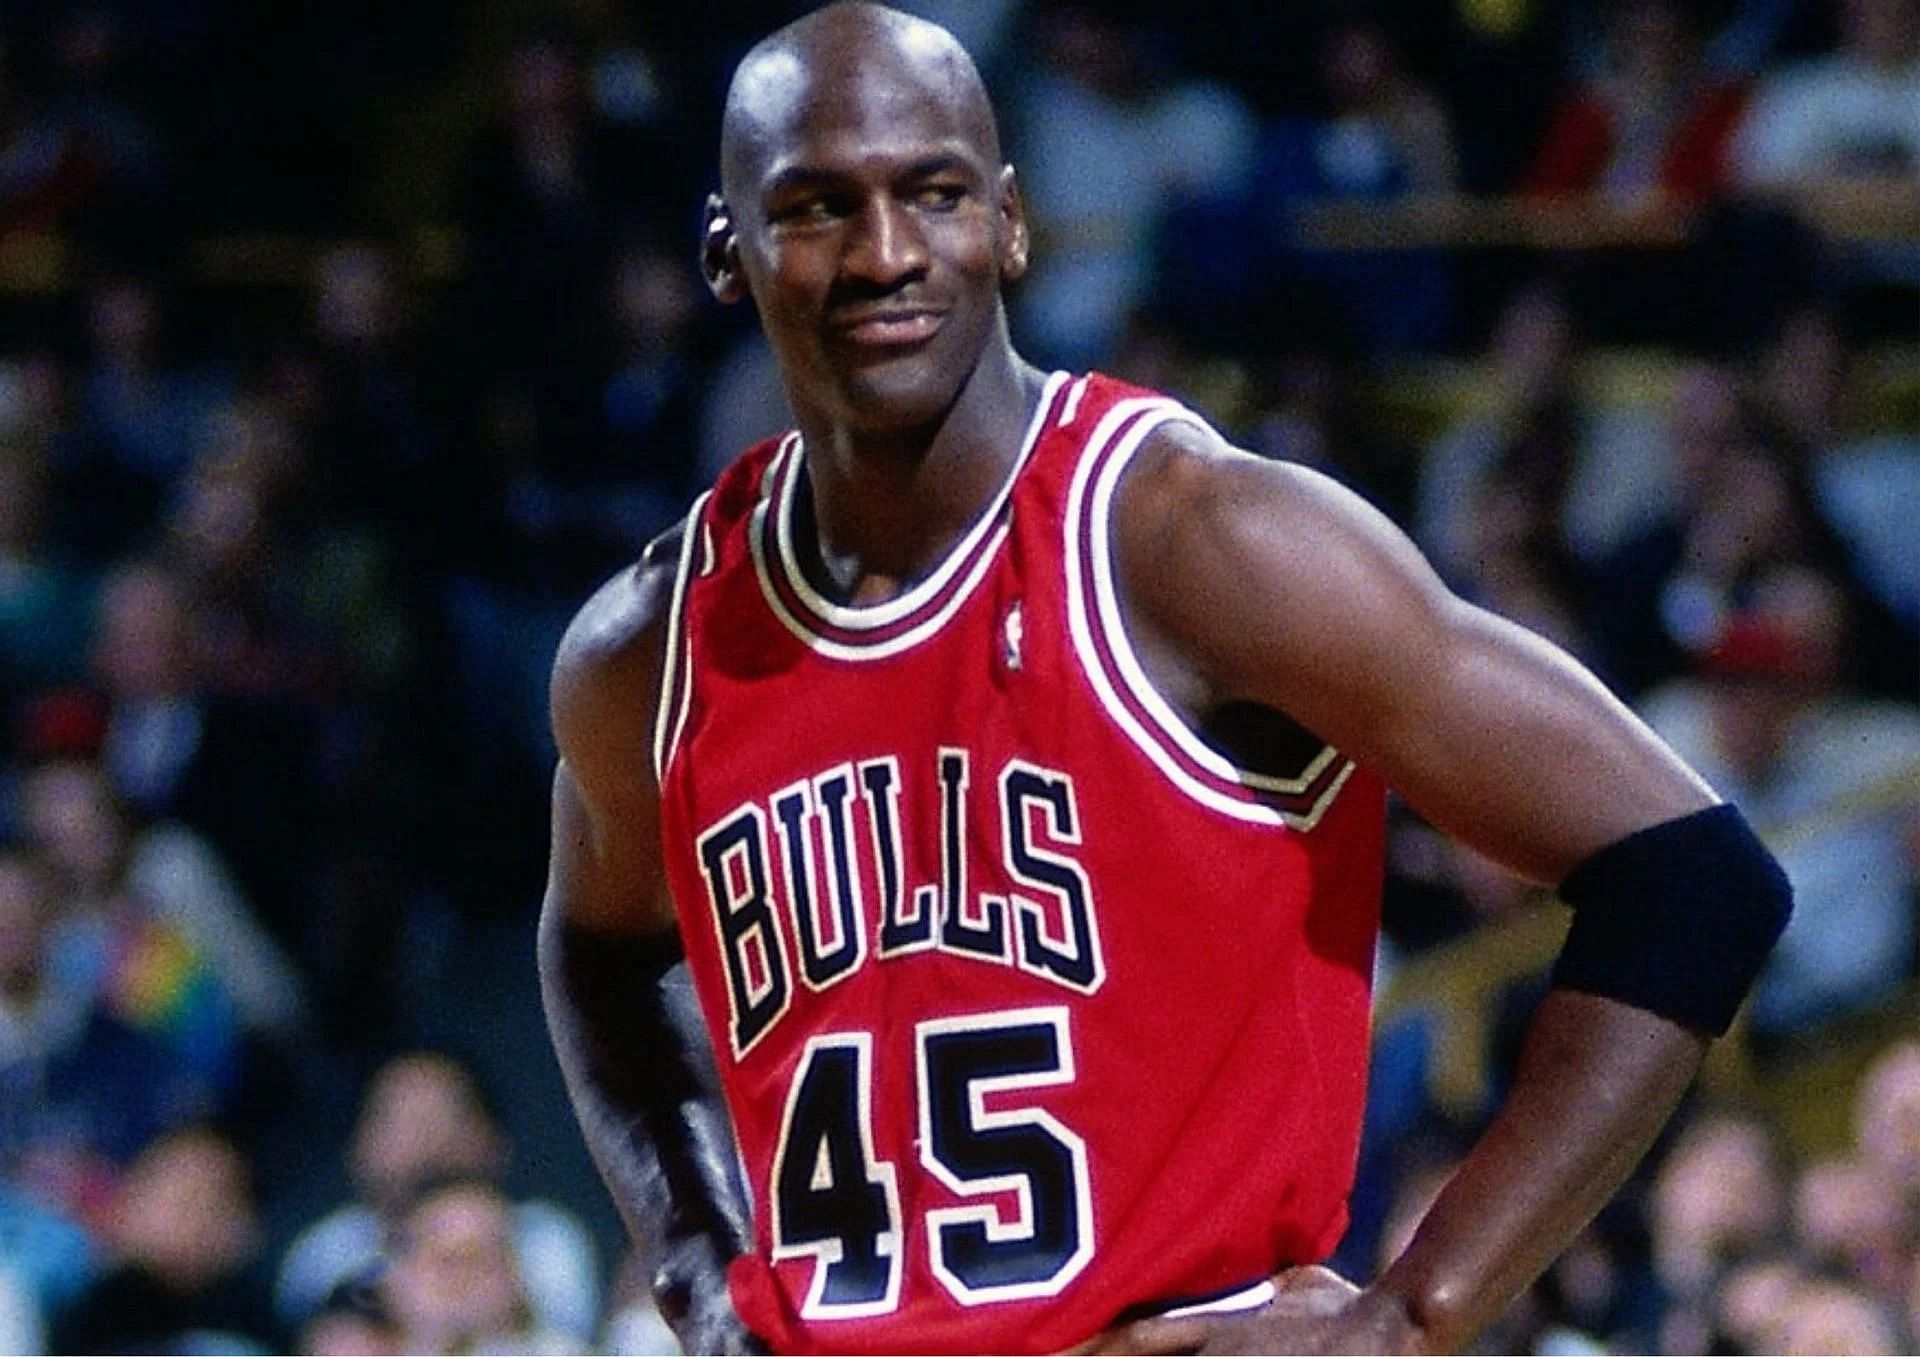 Michael Jordan envisioned his future in 1997